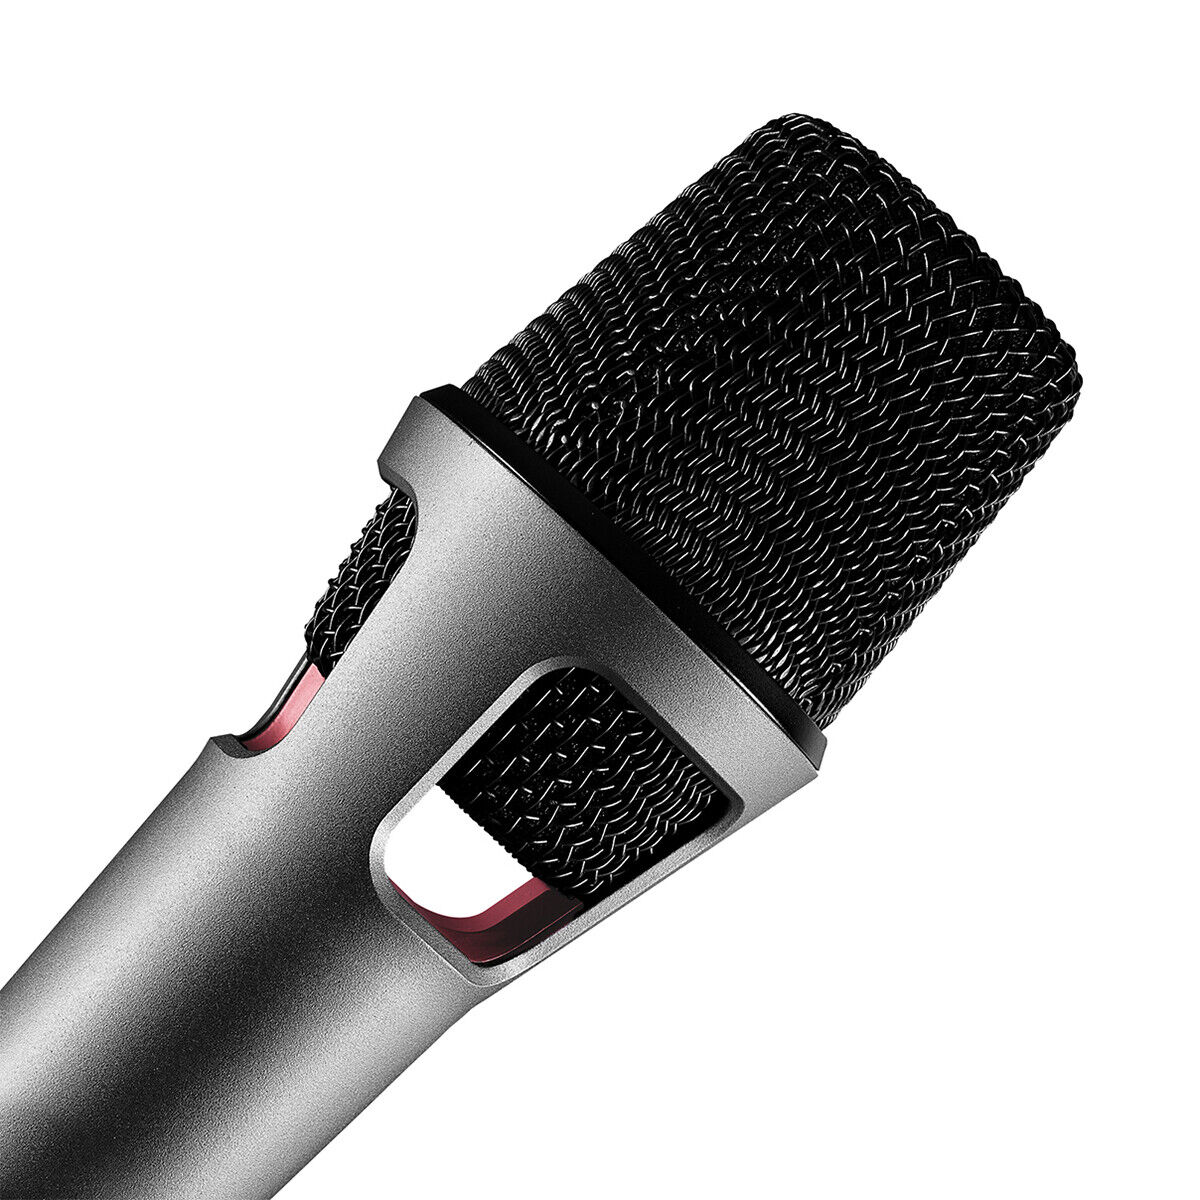 Austrian Audio OC707 True Condenser Stage Vocal Microphone | eBay